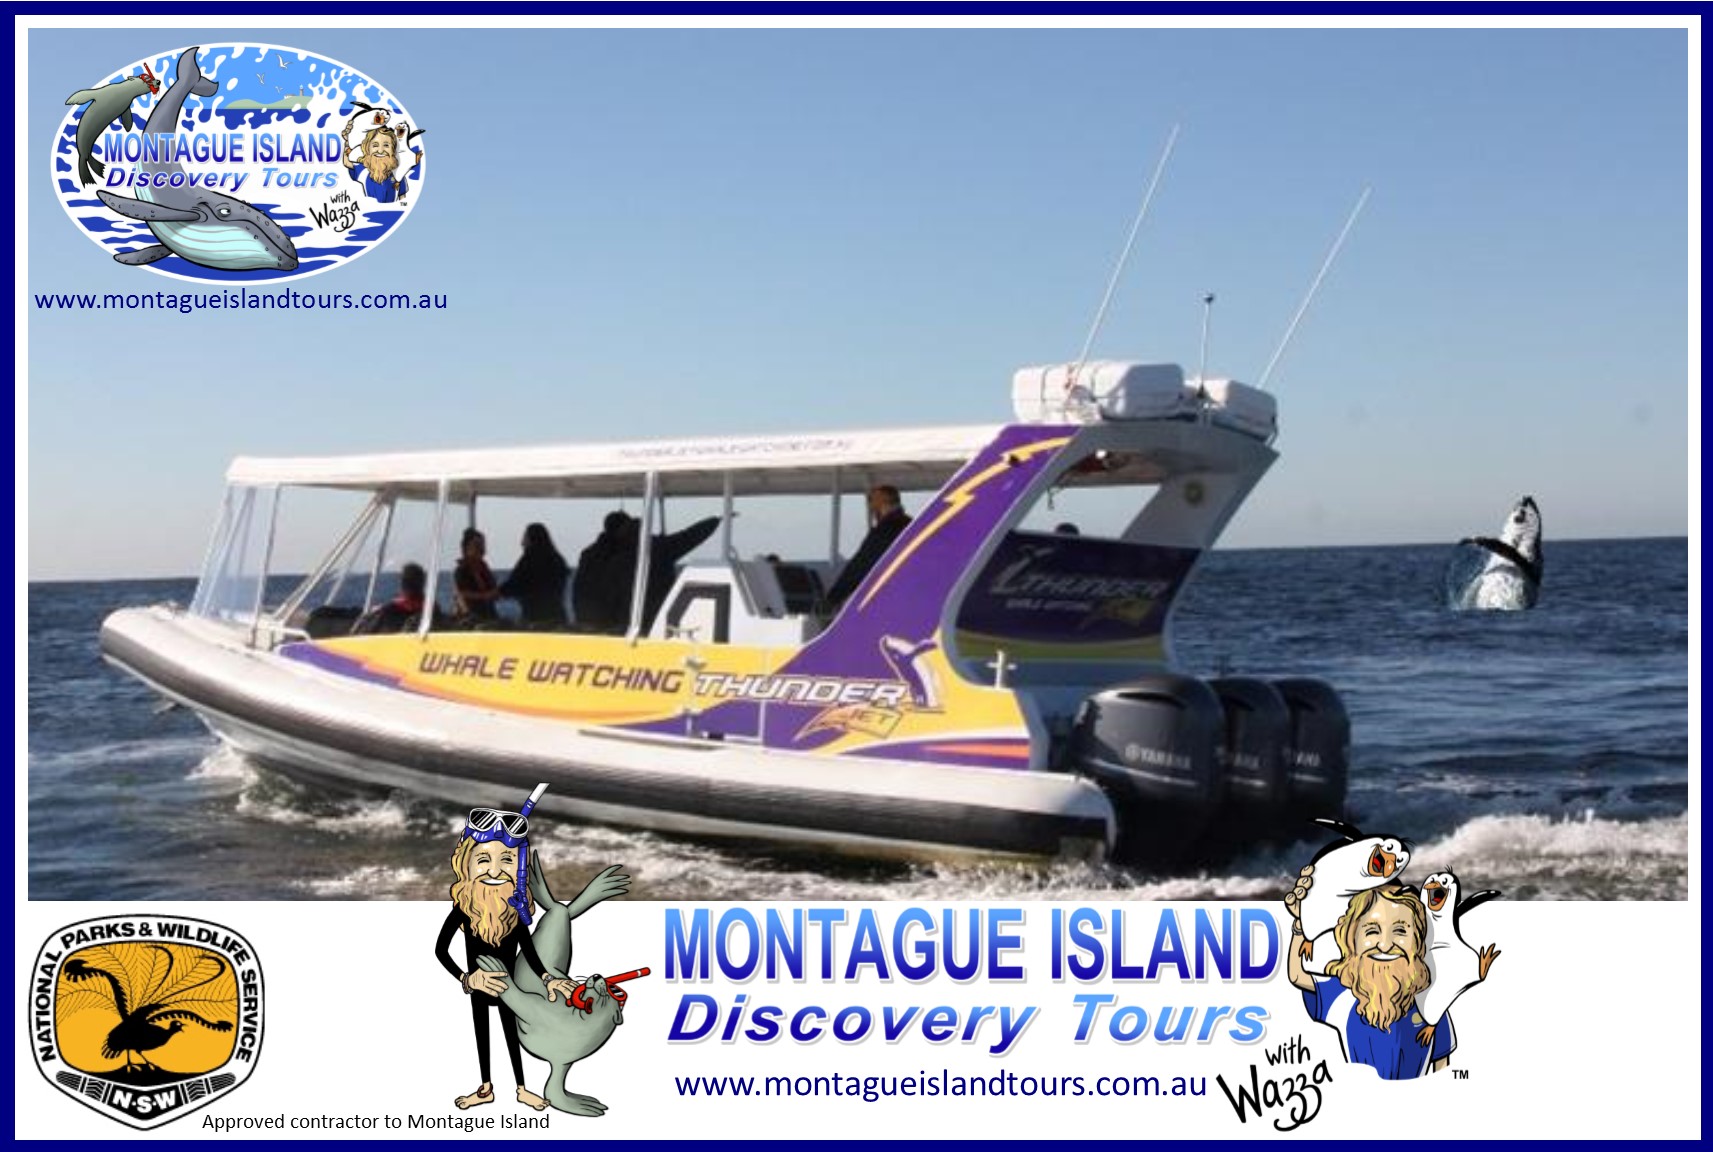 montague island penguin tours